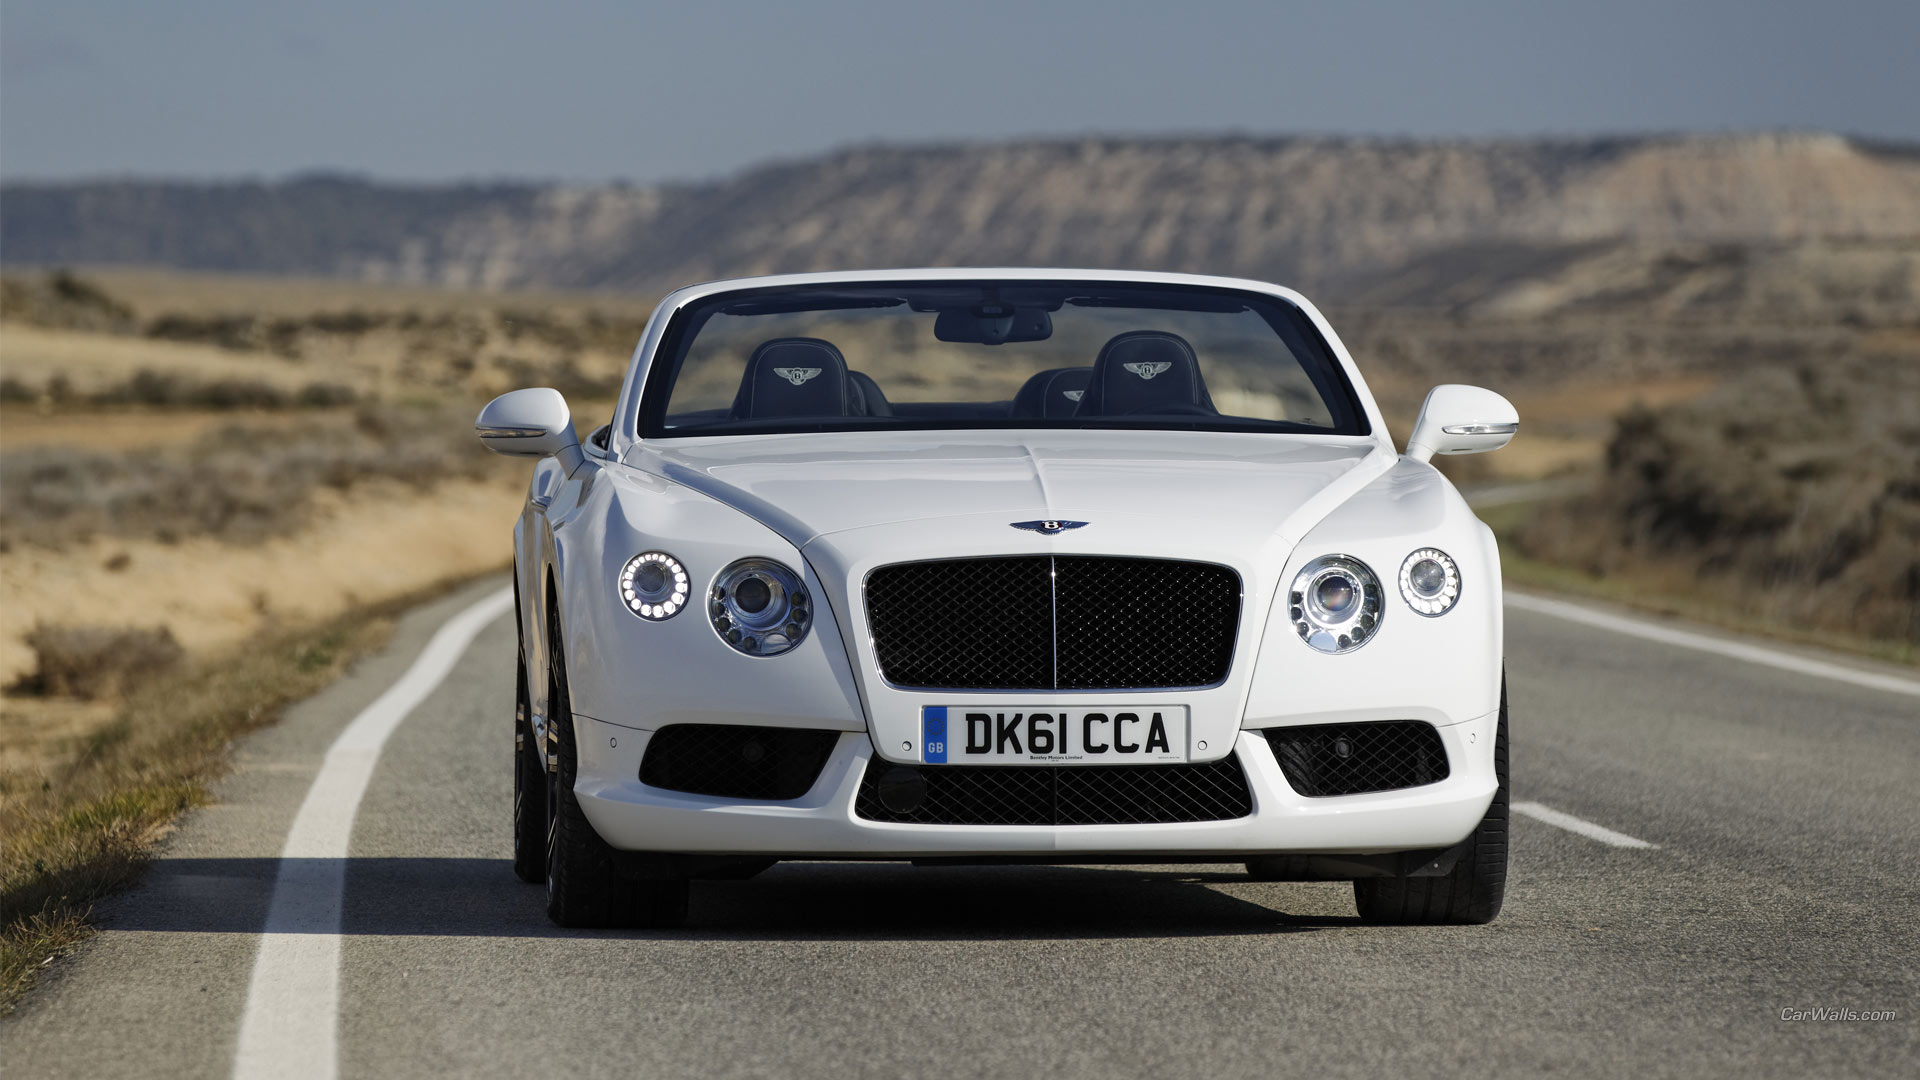 Free download wallpaper Bentley, Bentley Continental Gt, Vehicles on your PC desktop